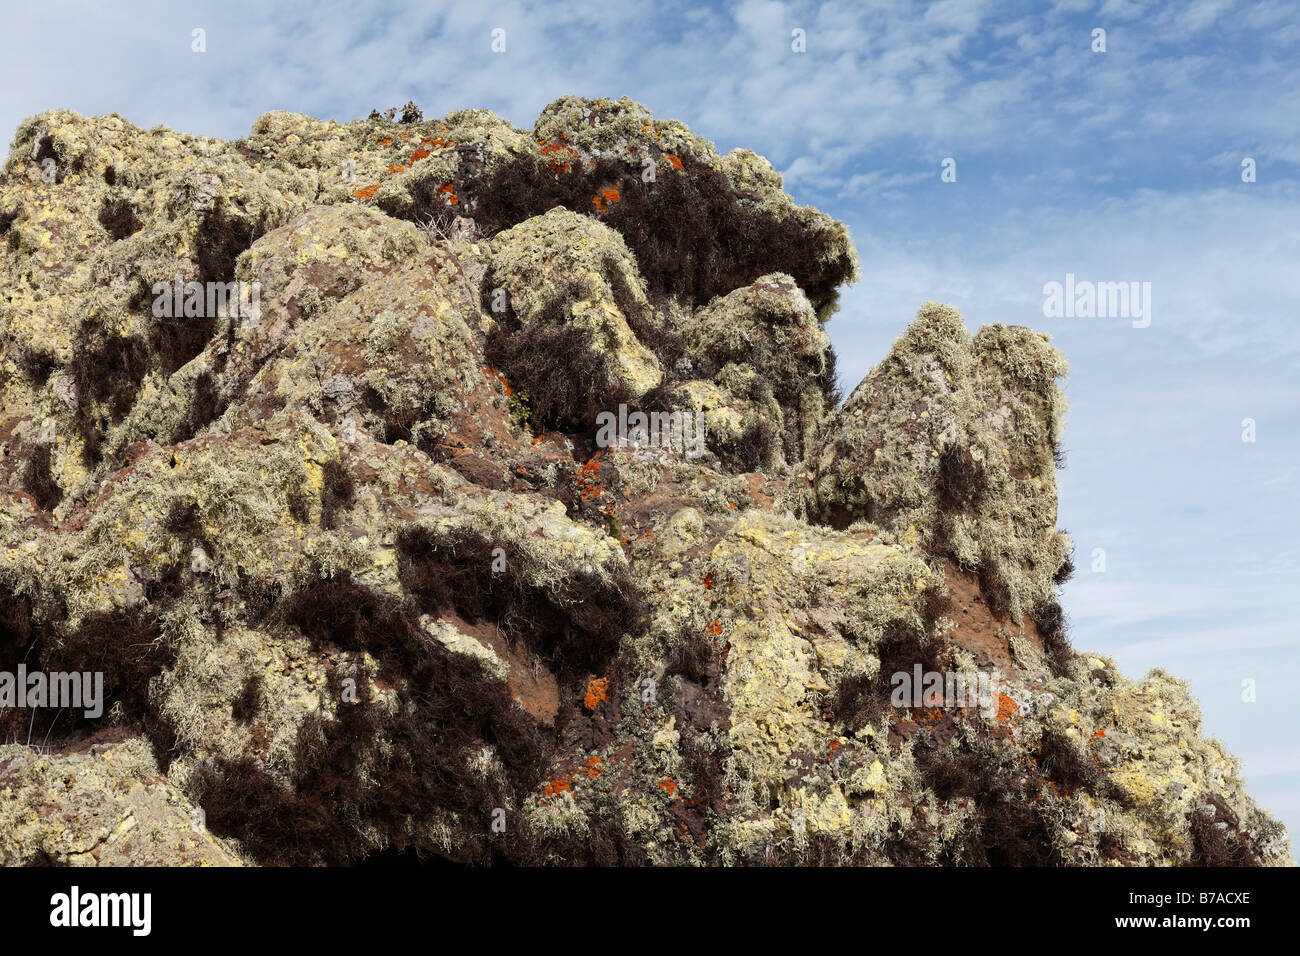 Lichen on lava stone, Majona, La Gomera, Canary Islands, Spain, Europe Stock Photo